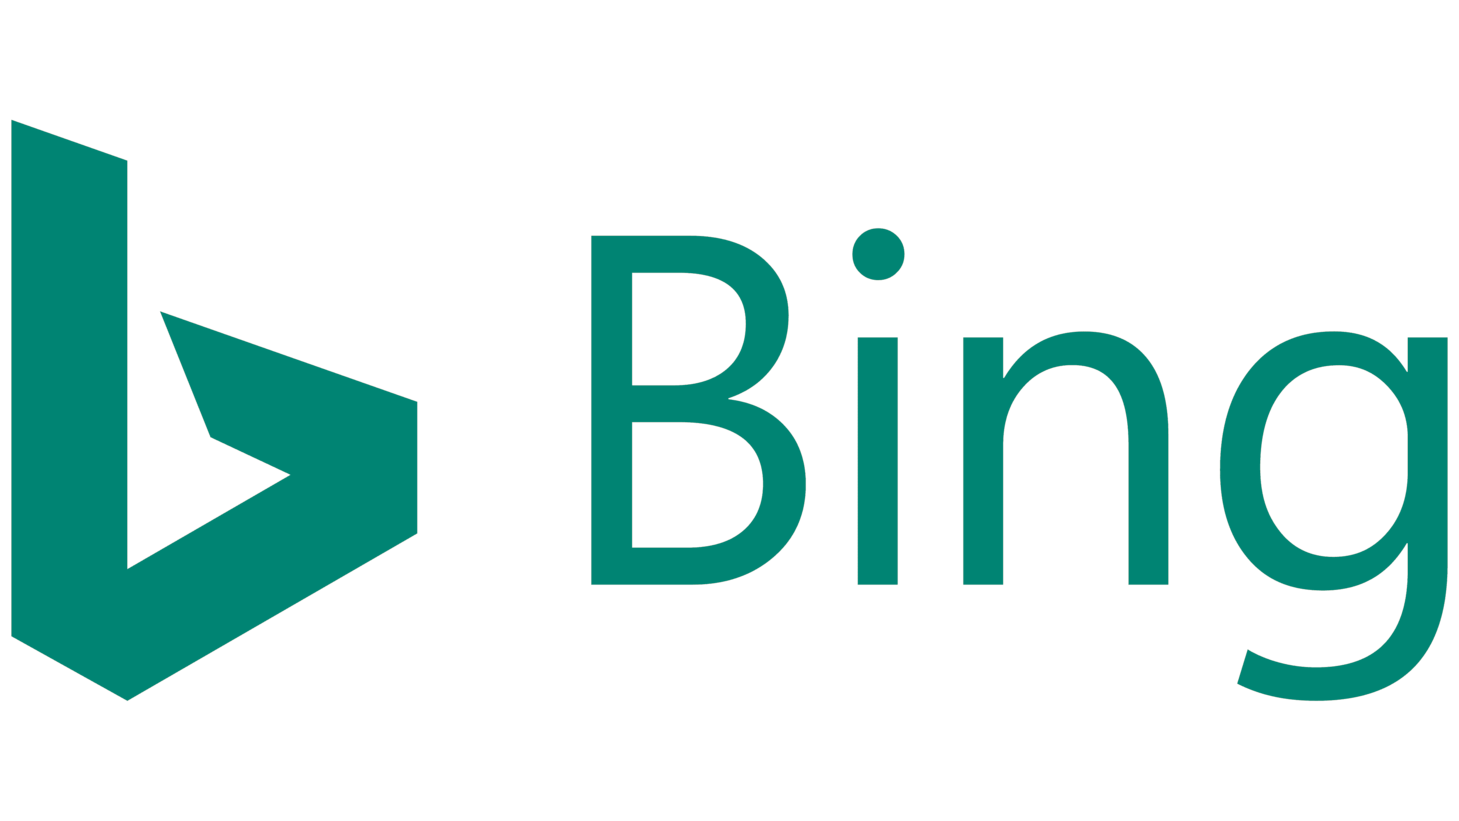 Bing sign 2016 2020